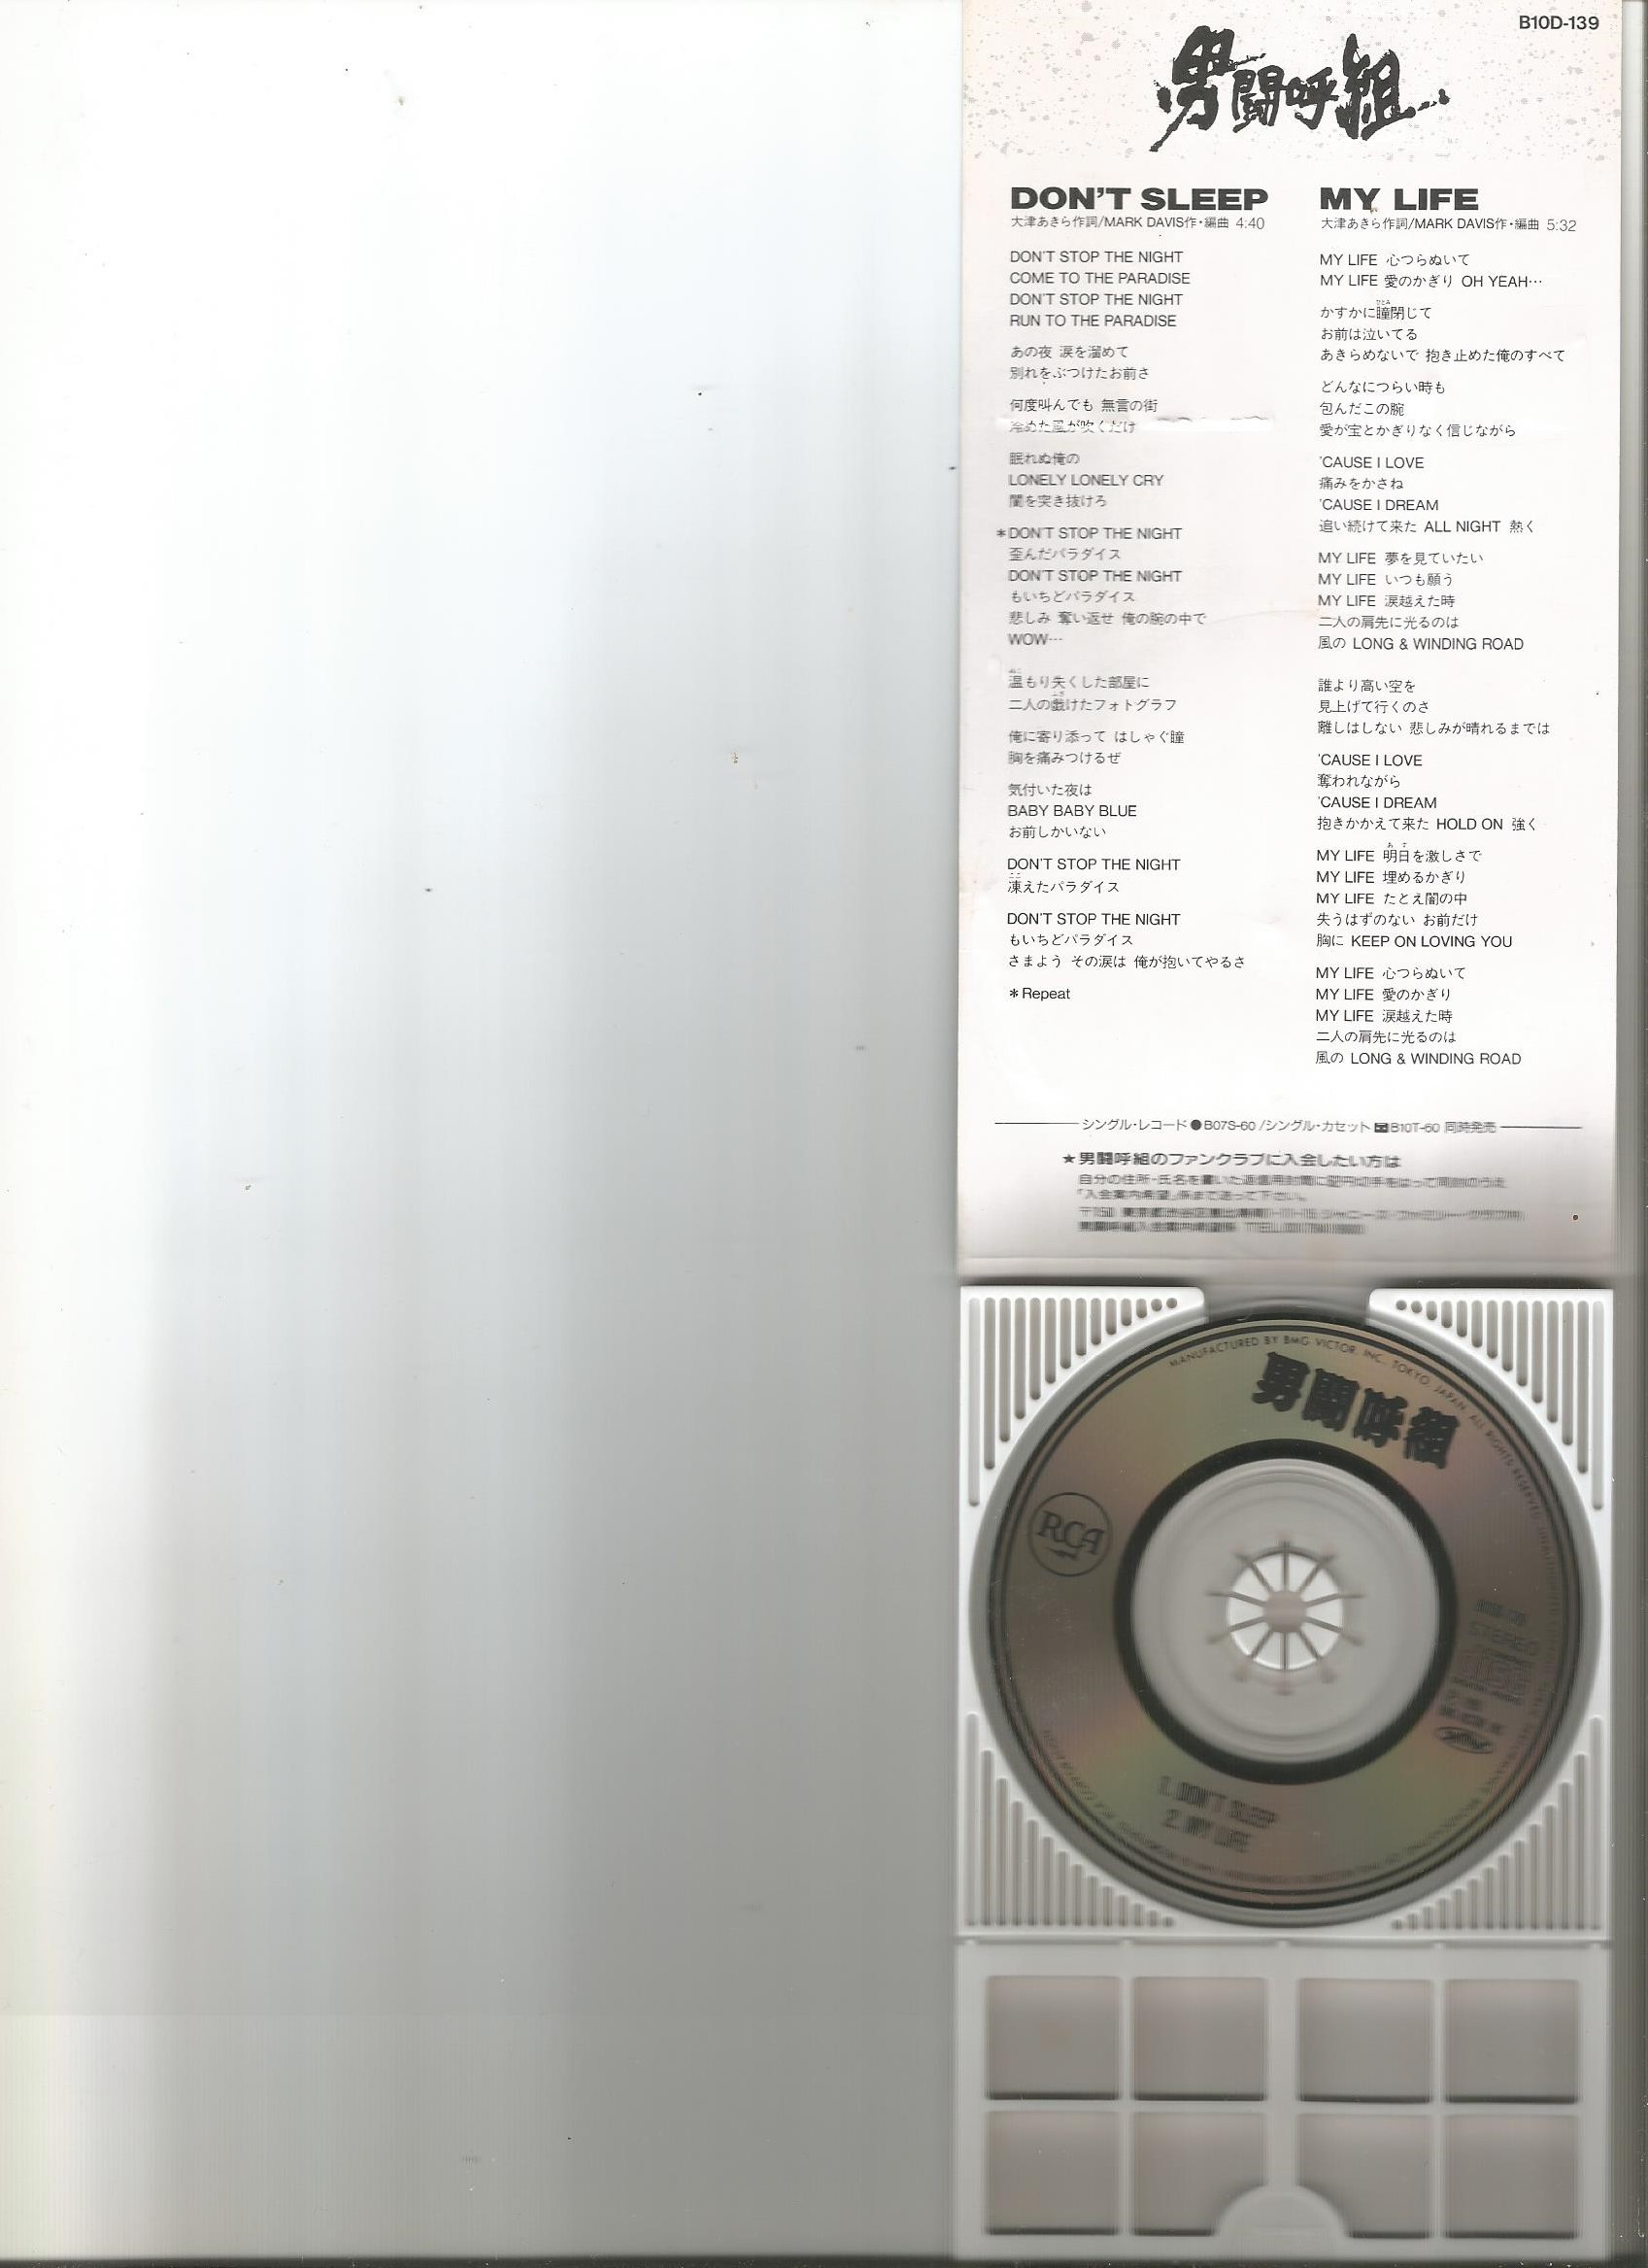 男闘呼組-8吋CDX3 WAV(MEGA盤) - 无损音乐分享区 - 日文老歌论坛 